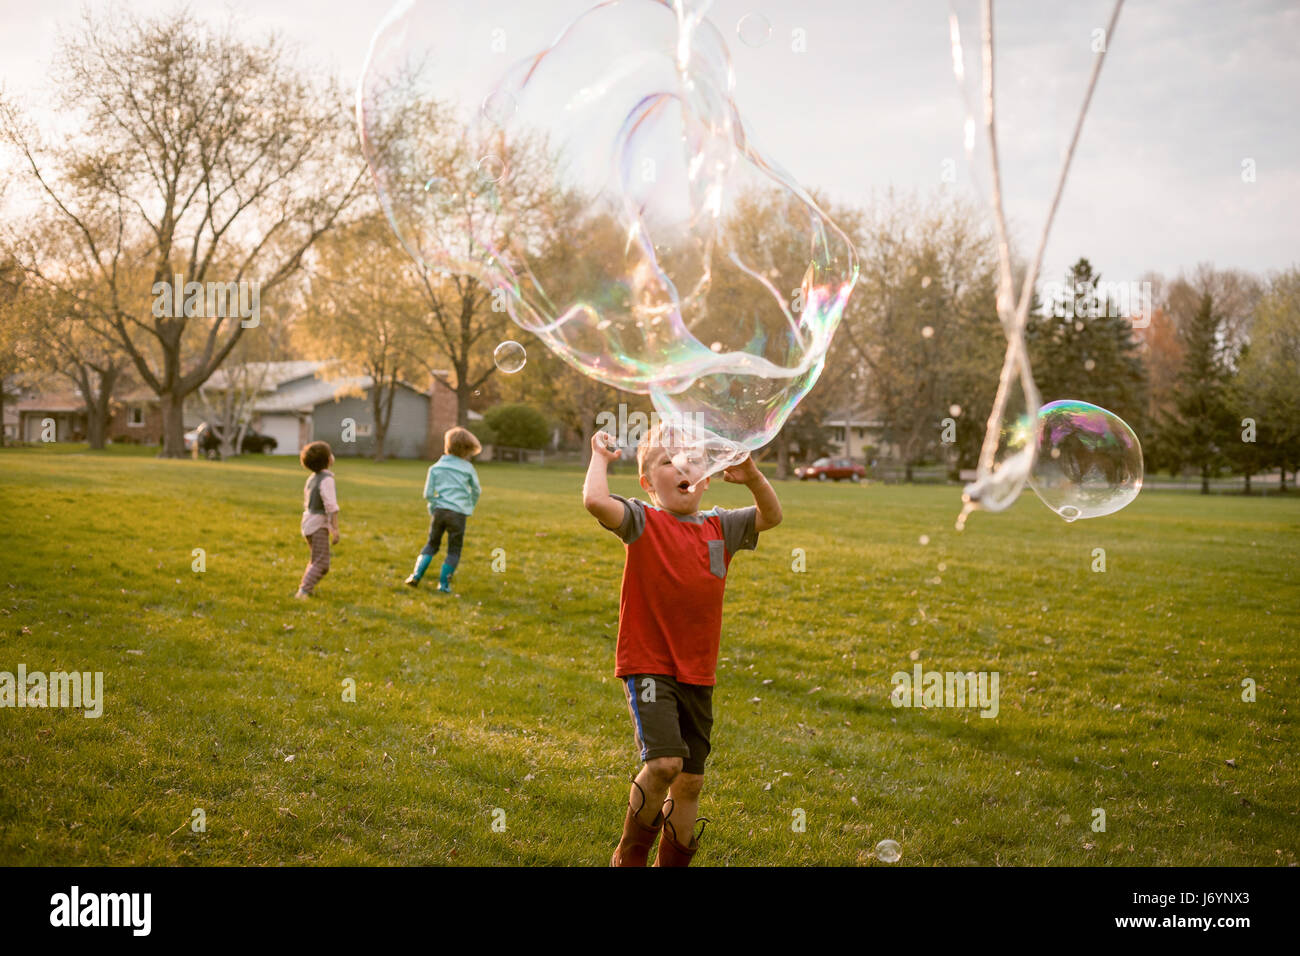 Drei Kinder spielen mit riesige Seifenblasen in einem park Stockfoto